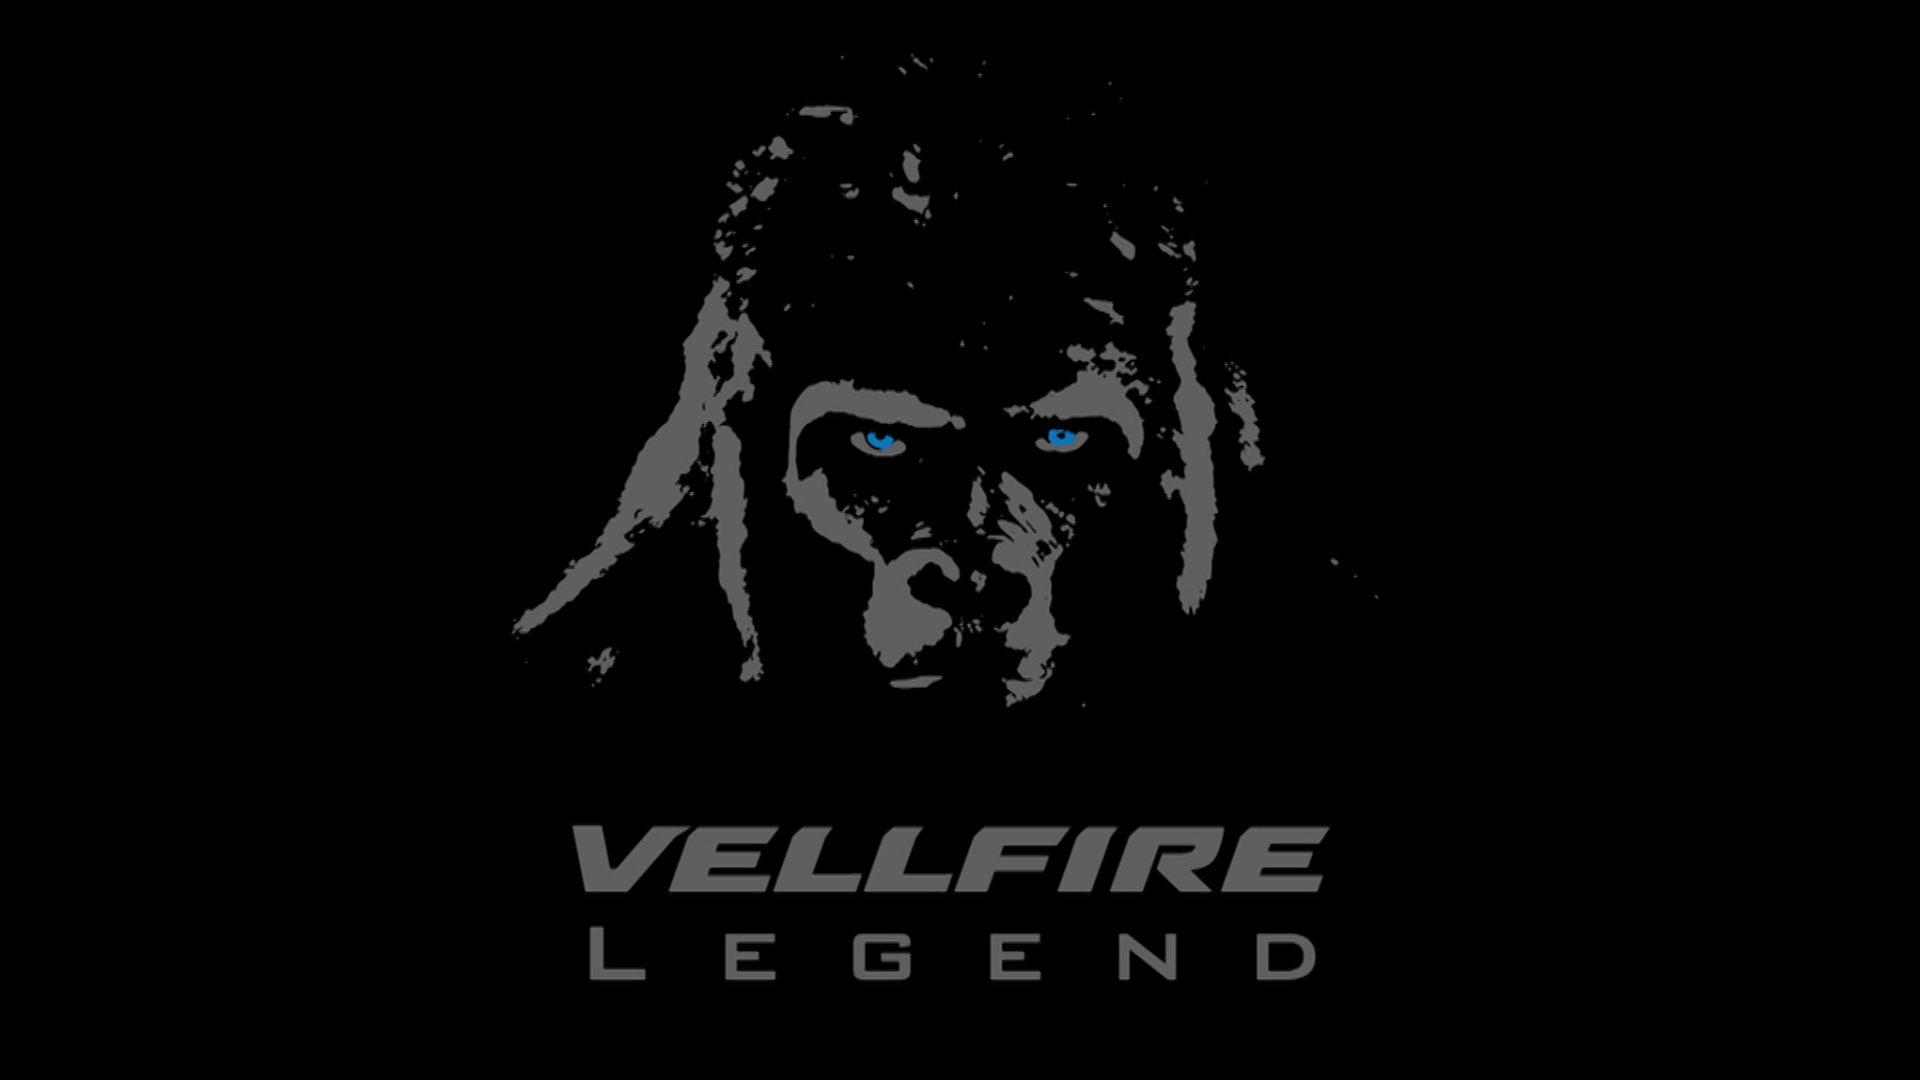 自由 個性 冒険 を諦めない大人達が挑む新番組がスタート Youtube番組 Vellfire Legend 1月29日 木 より配信開始 トヨタ自動車株式会社のプレスリリース